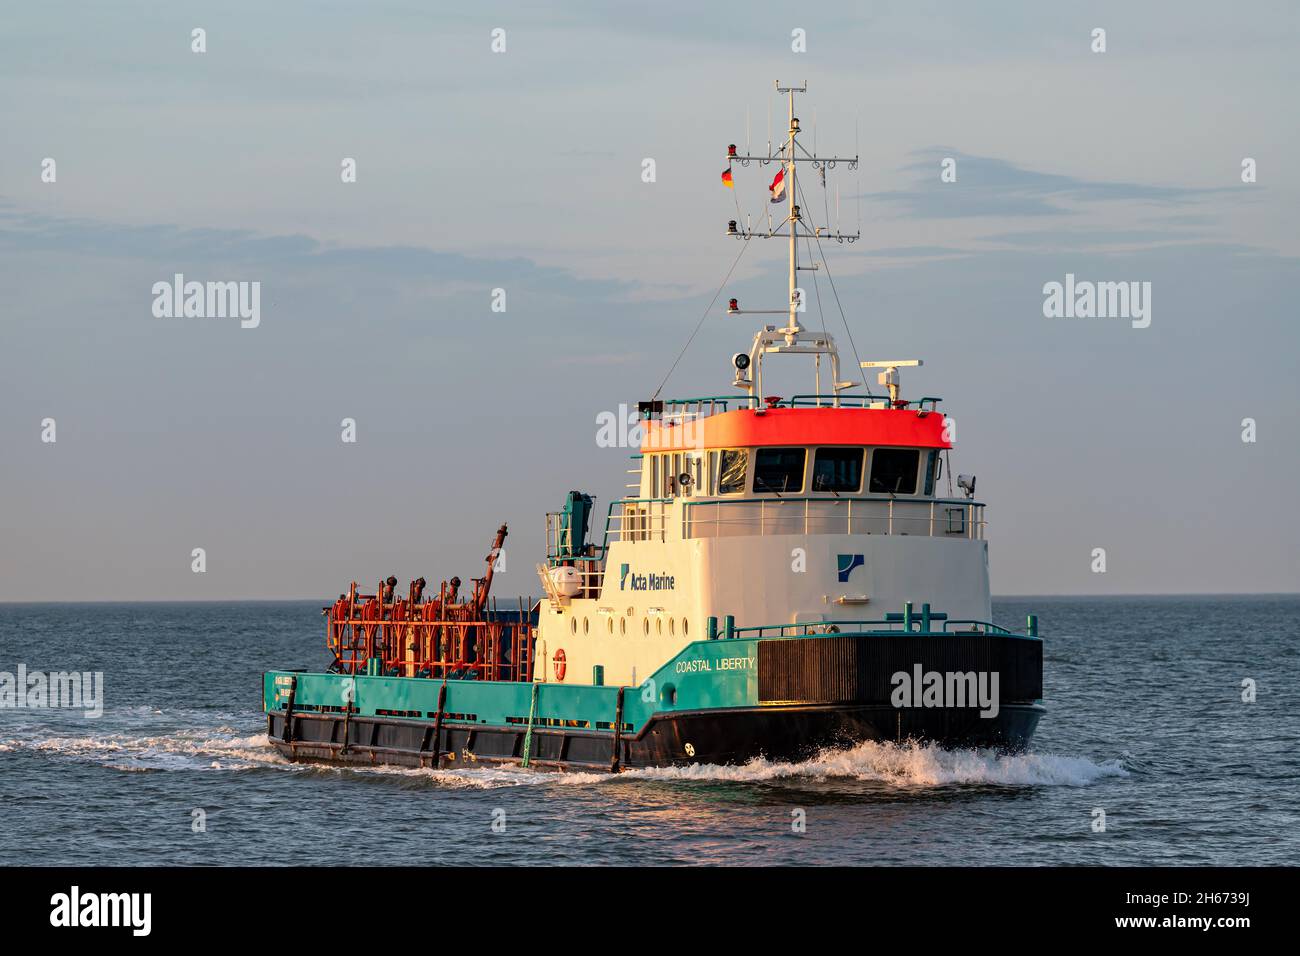 Acta marina costera nave de suministro del servicio offshore libertad sobre el río Elba Foto de stock